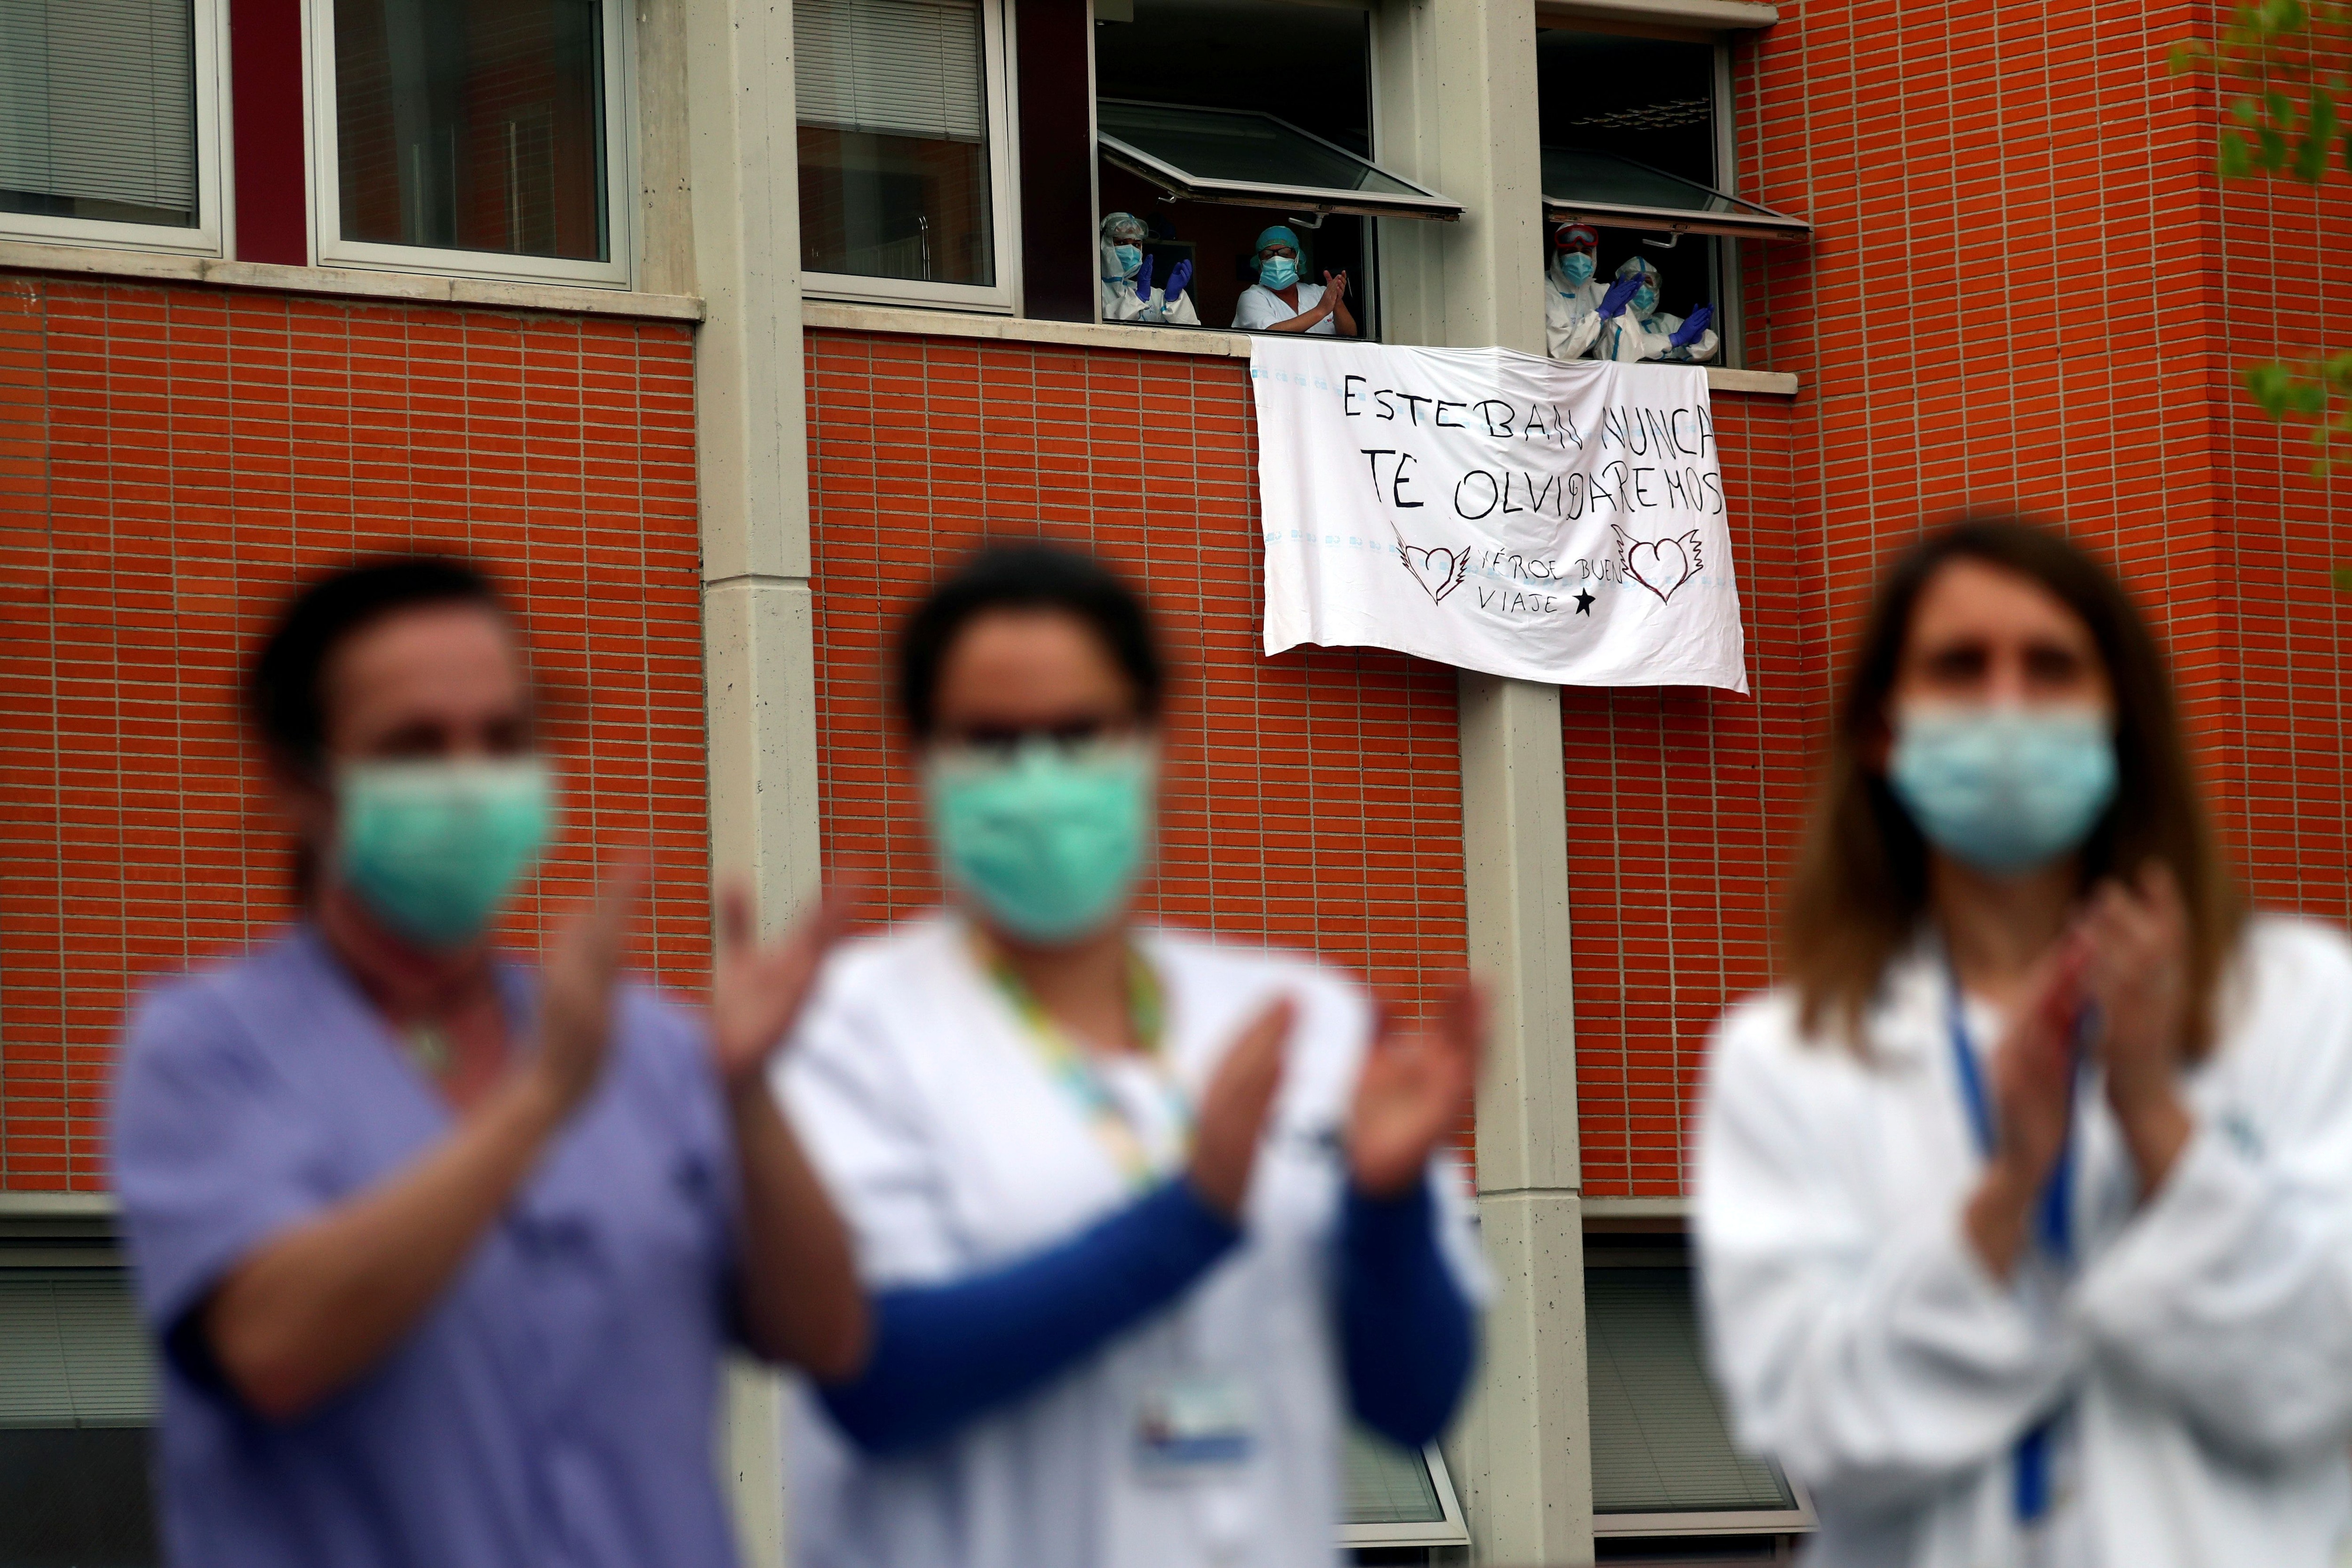 Trabajadores aplauden junto a una bandera por Esteban, un enfermero que murió por coronavirus (Reuters)